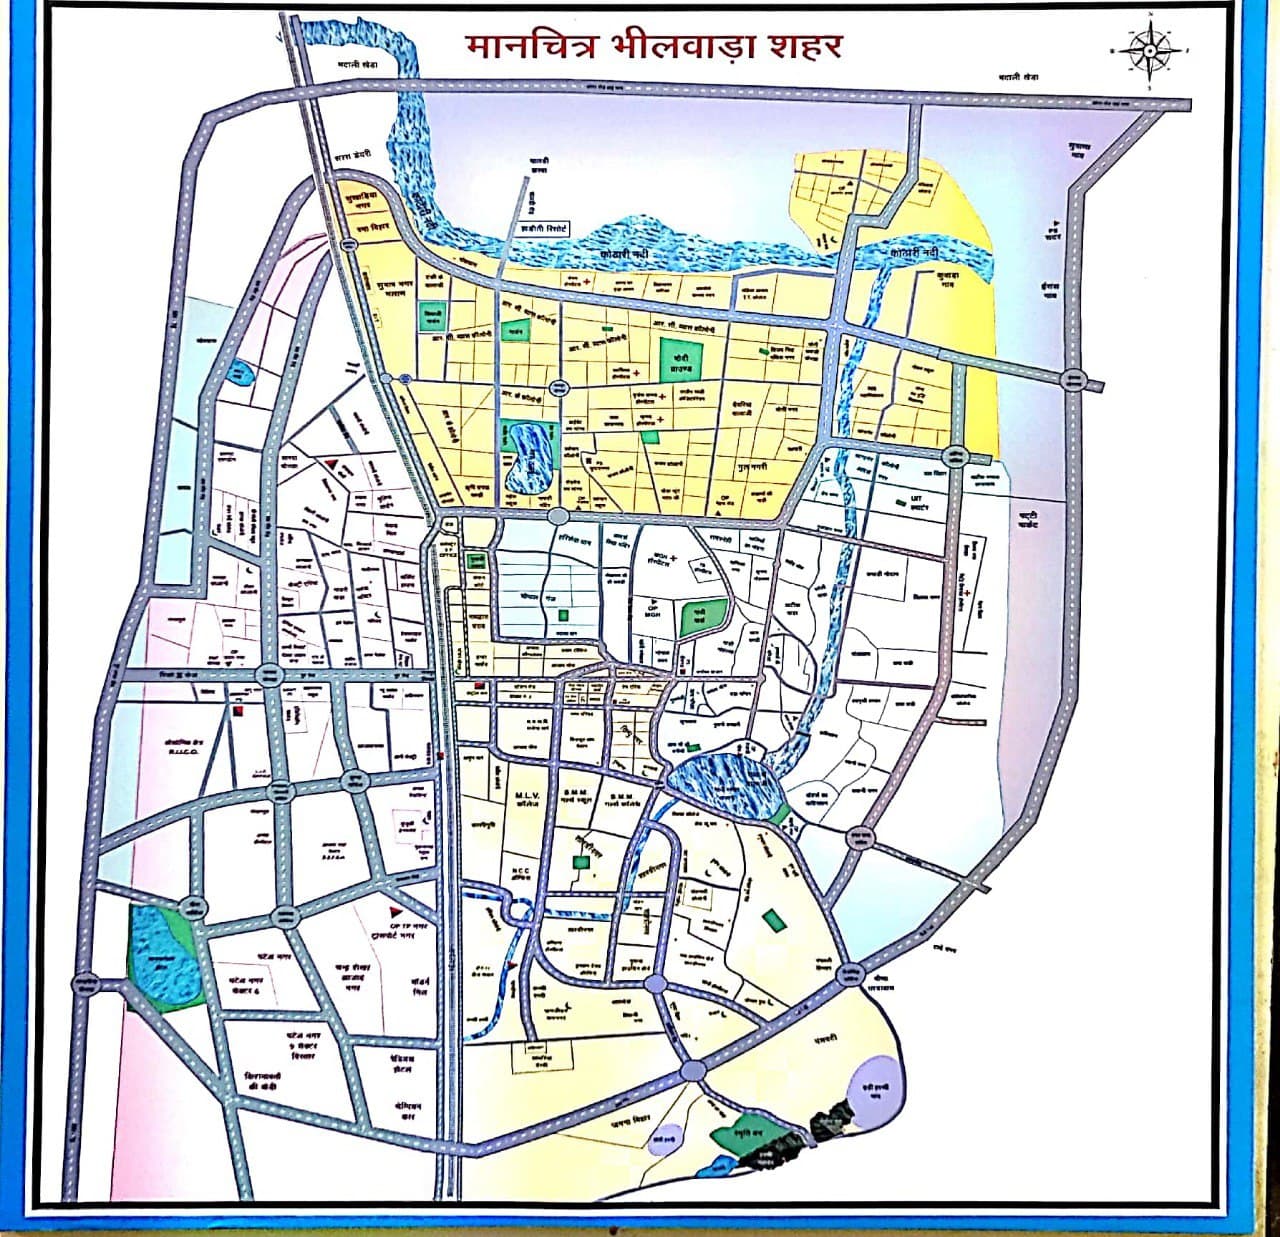 Bhilwara city longed for Chambal water